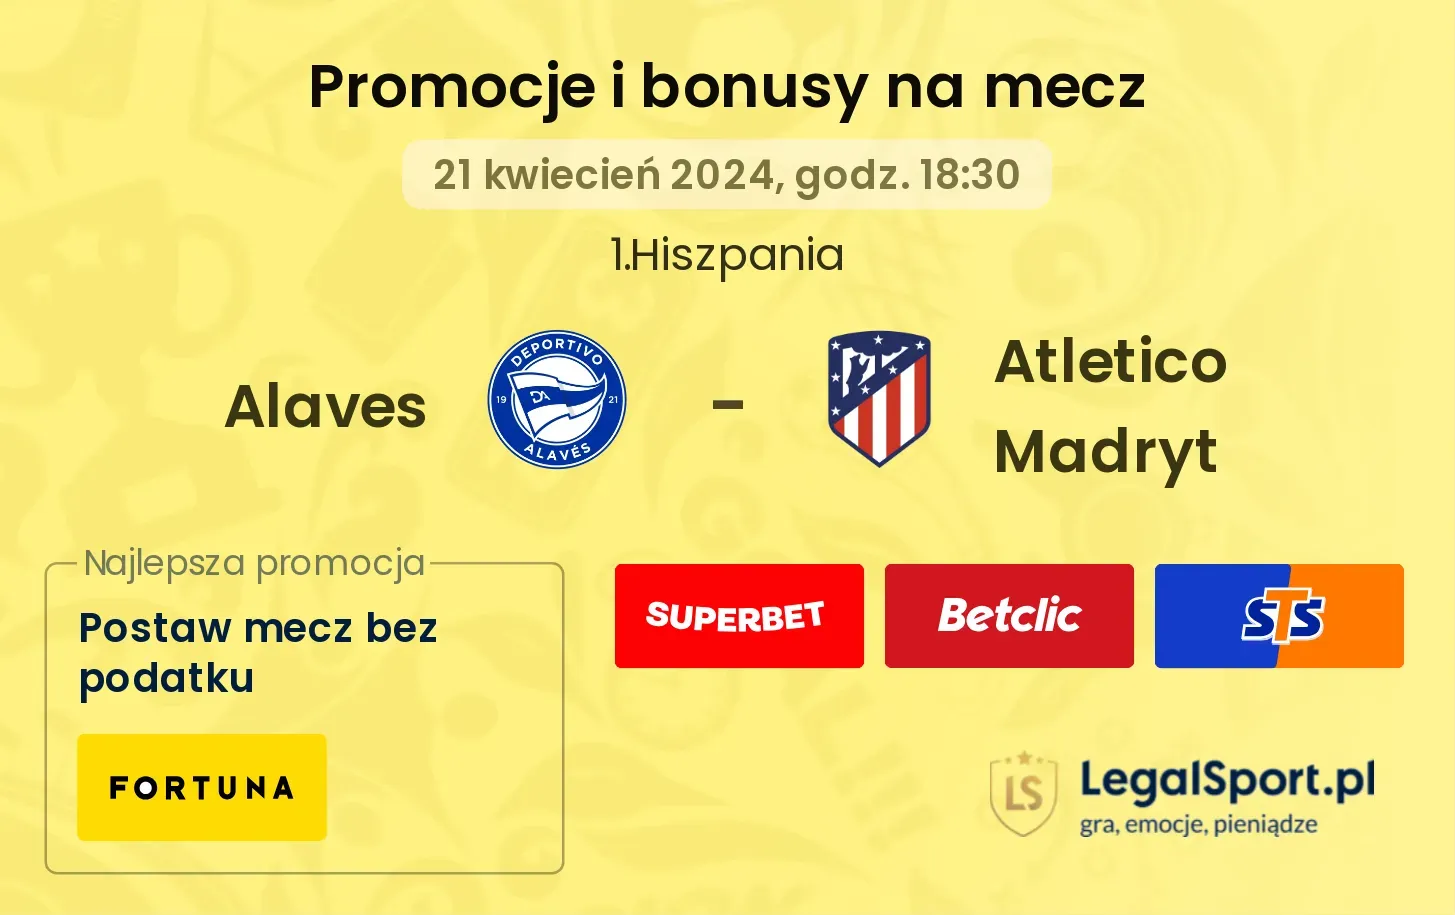 Alaves - Atletico Madryt promocje bonusy na mecz